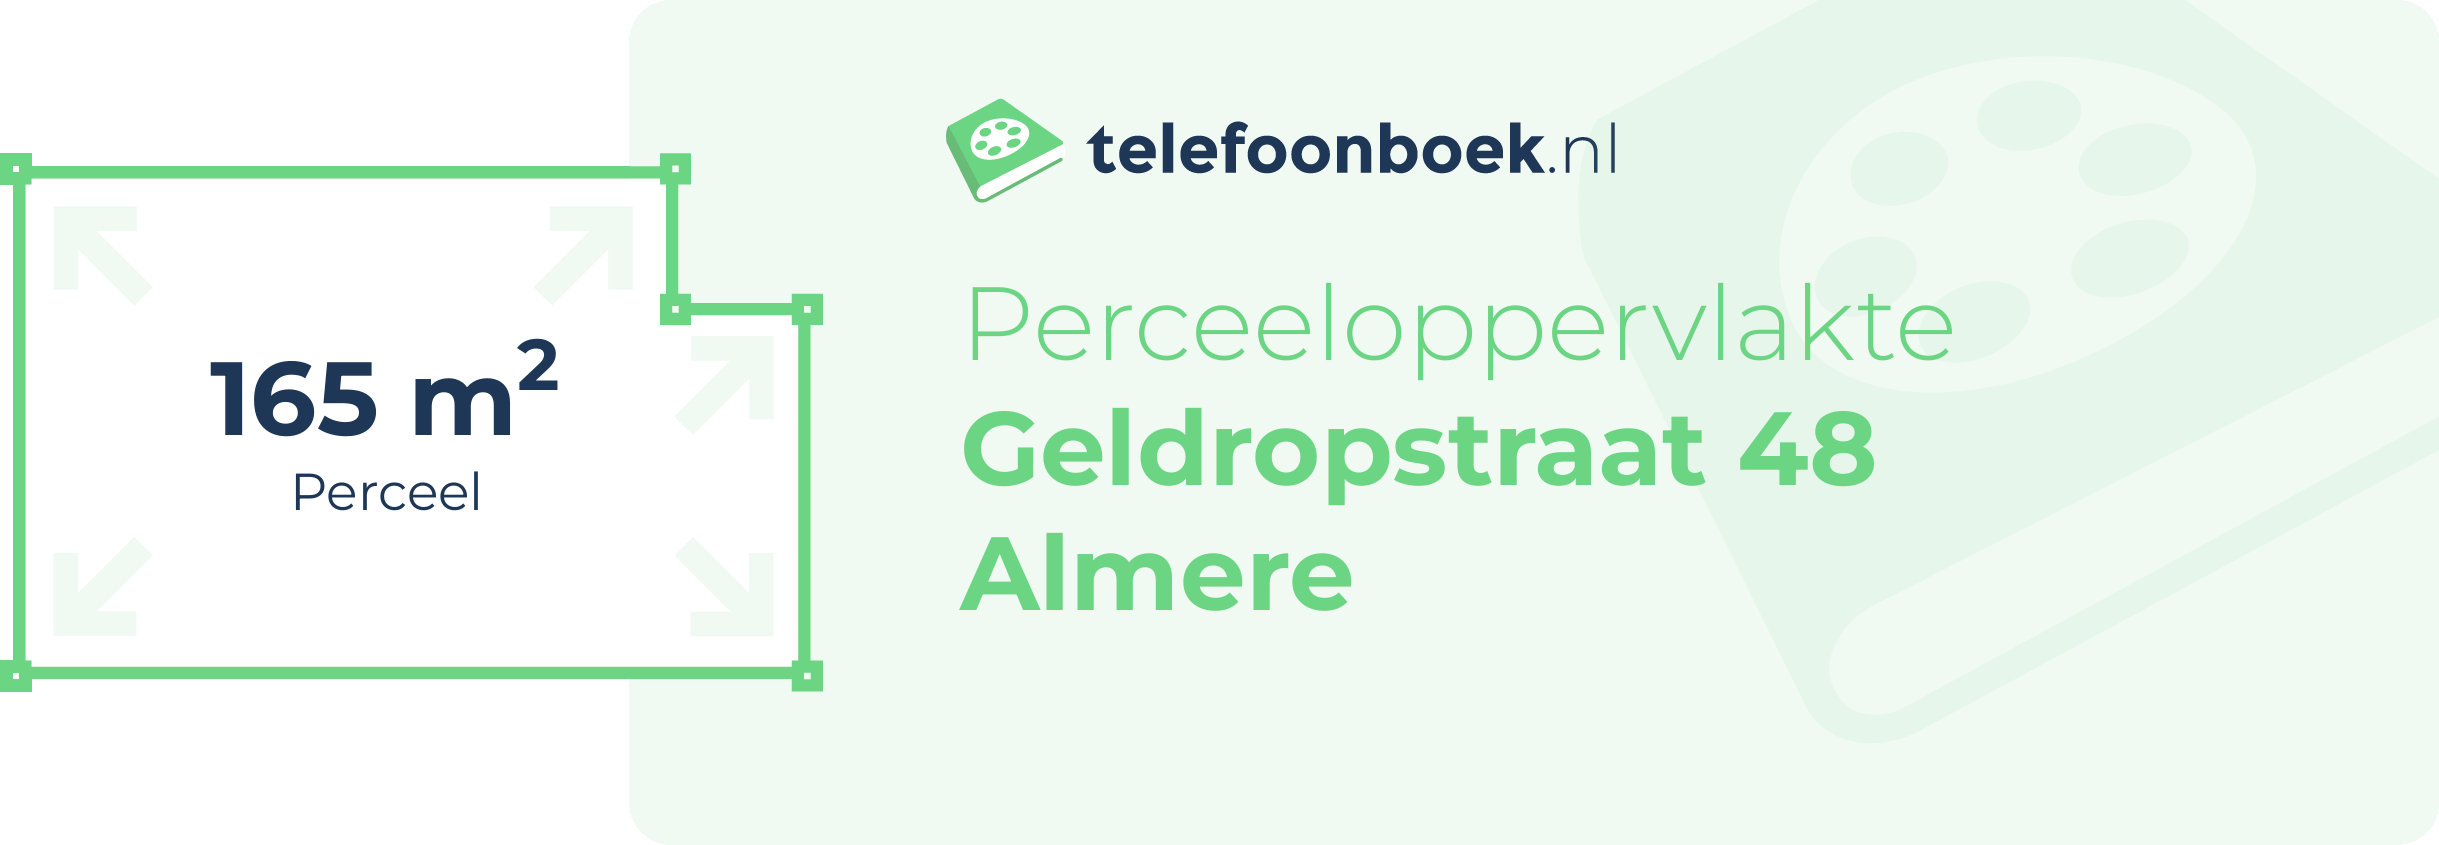 Perceeloppervlakte Geldropstraat 48 Almere